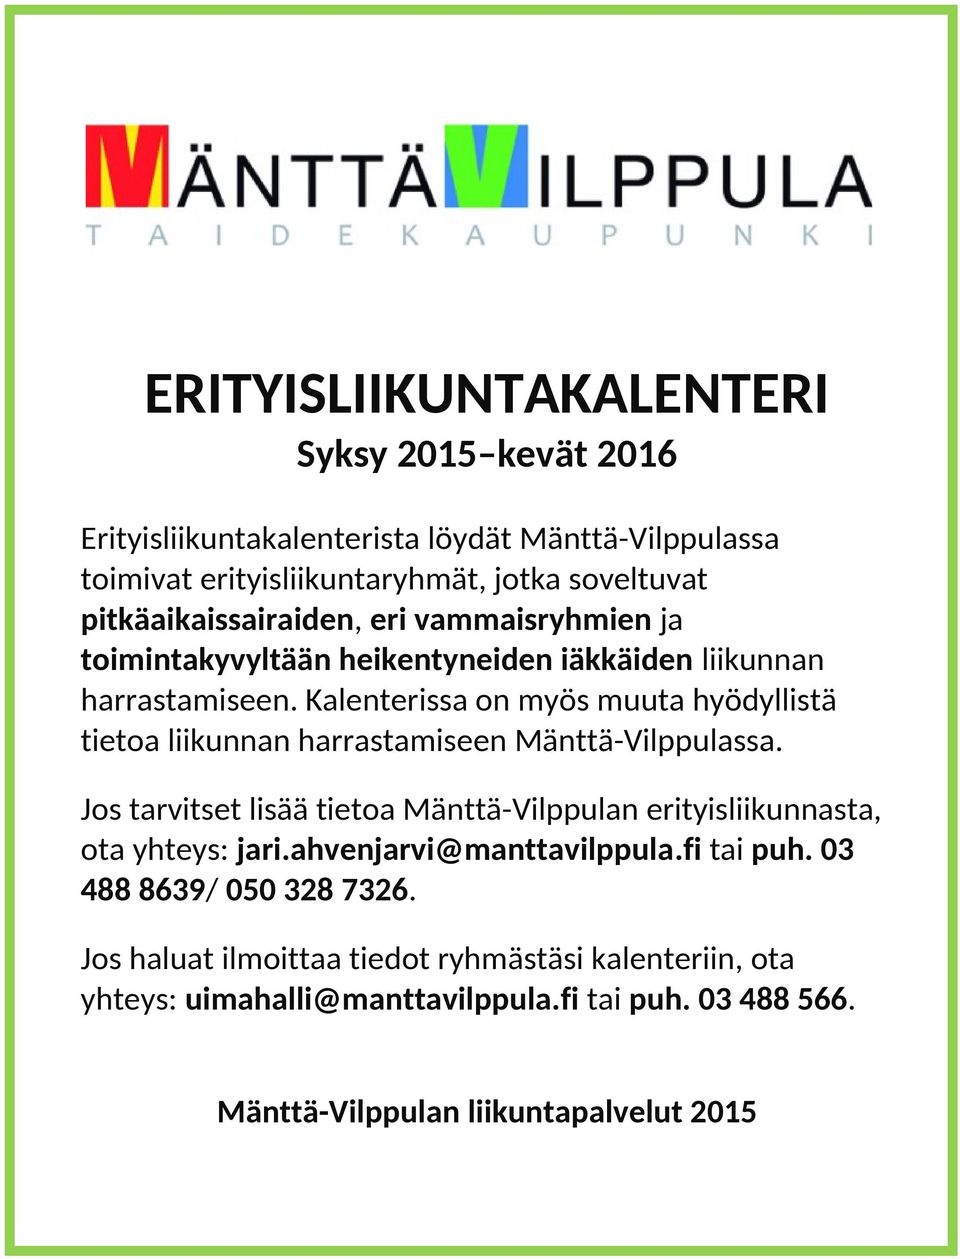 Kalenterissa on myös muuta hyödyllistä tietoa liikunnan harrastamiseen Mänttä-Vilppulassa.